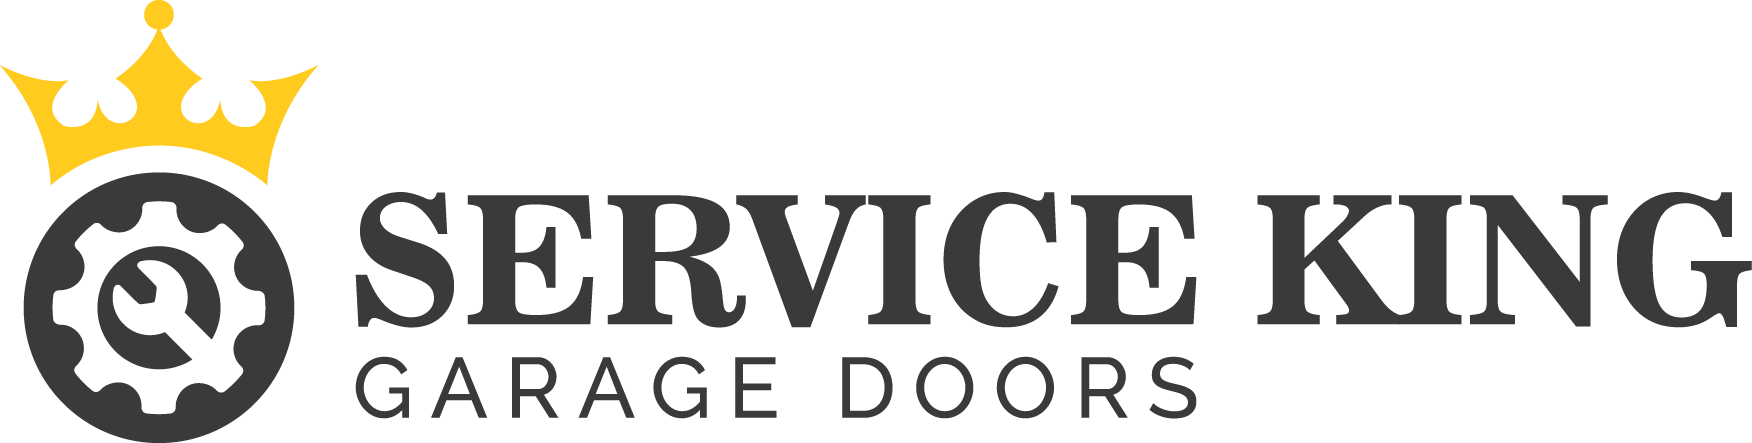 Service King Garage Doors Logo